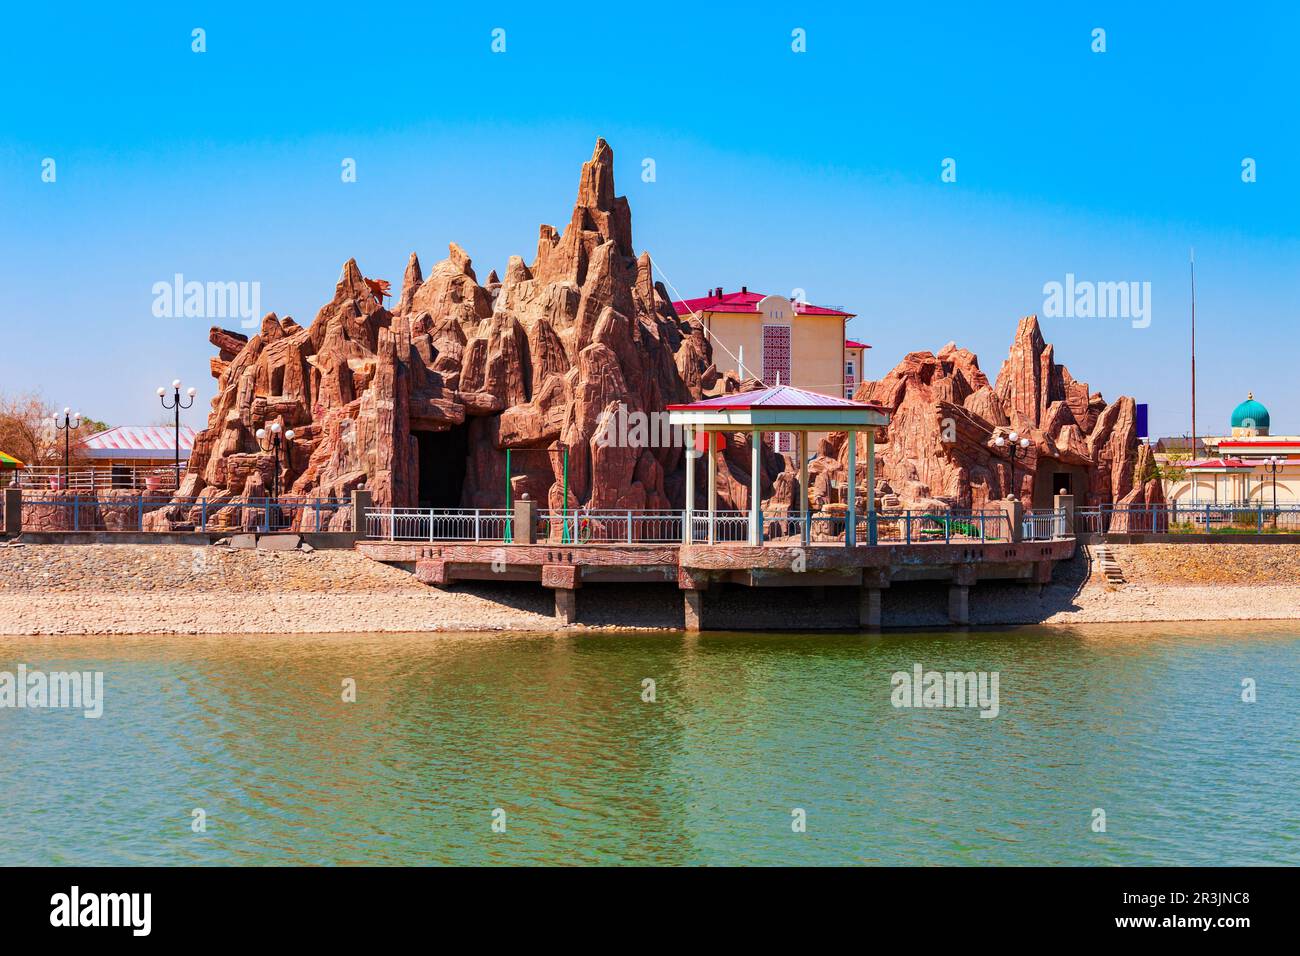 Yoshlar Koli oder Youth Lake oder Molodezhnoye Ozero Park im Amir Timur Park im Zentrum der Stadt Urgench, Usbekistan Stockfoto